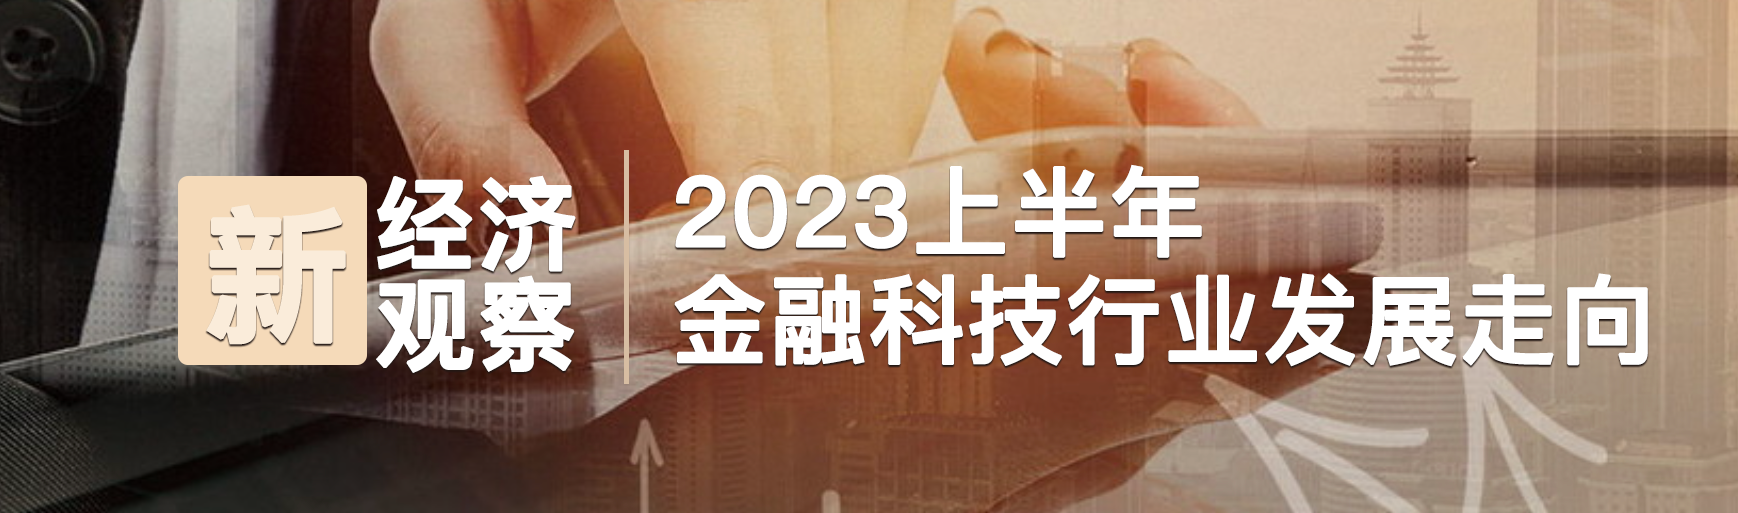 新经济观察——2023上半年金融科技行业发展走向